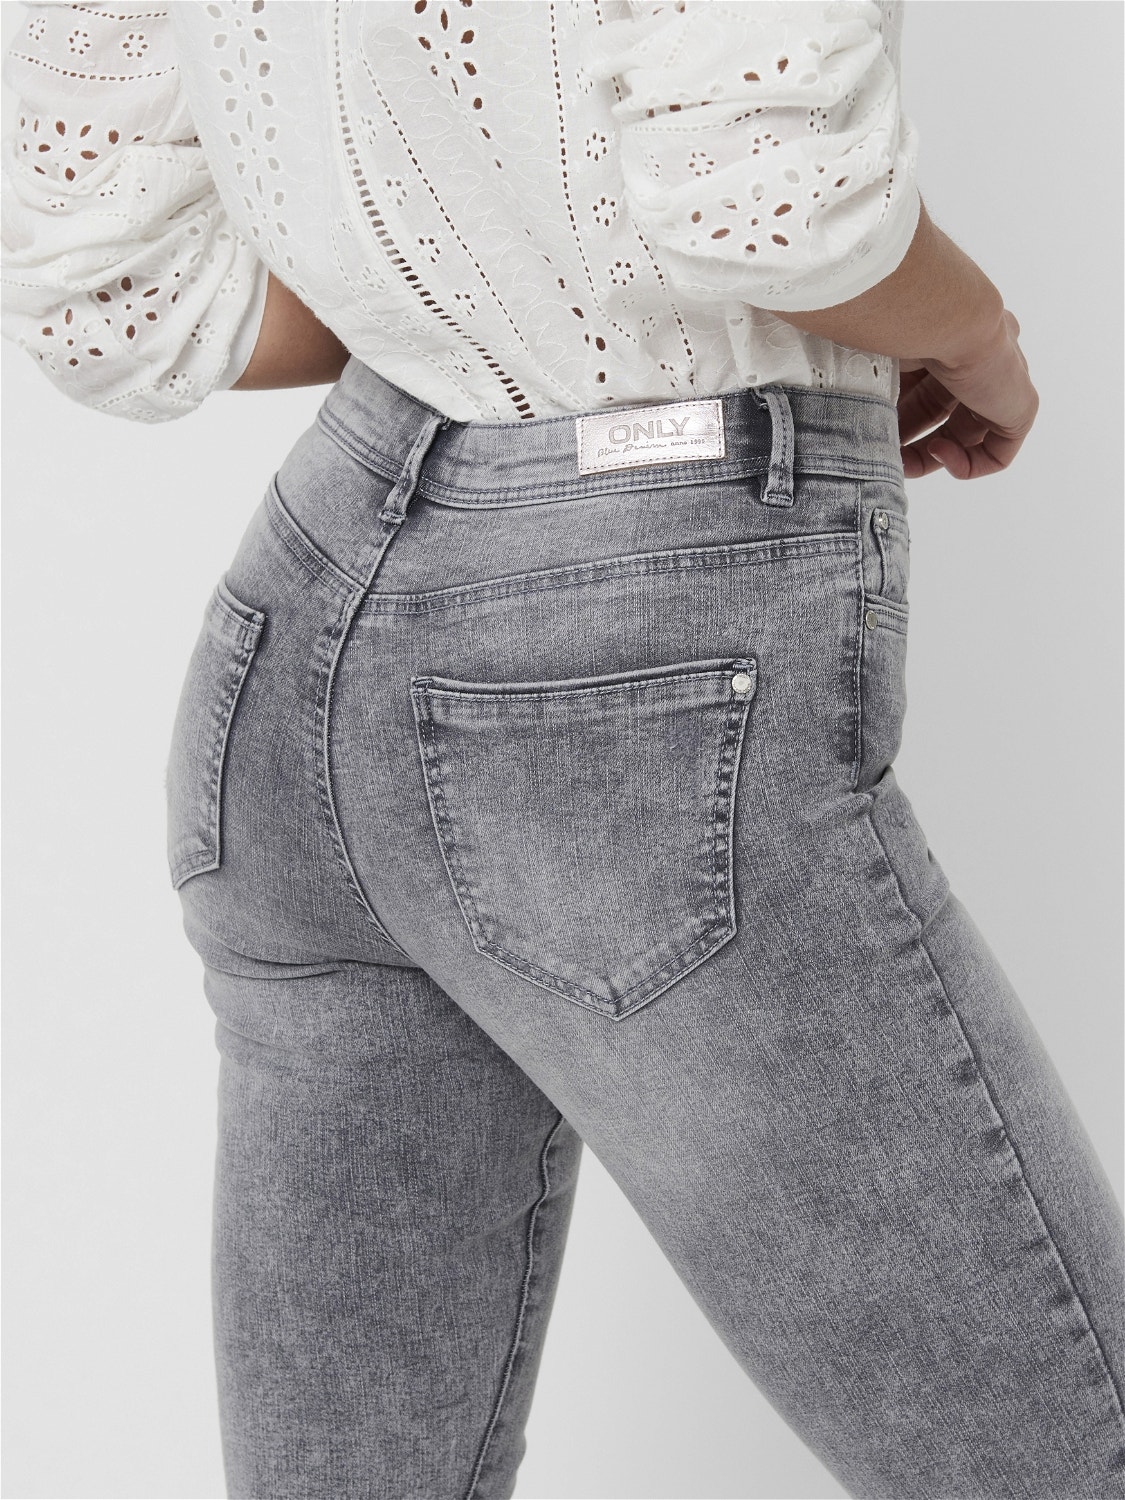 ONLY ONLWAUW MID waist SKinny Jeans -Medium Grey Denim - 15223167